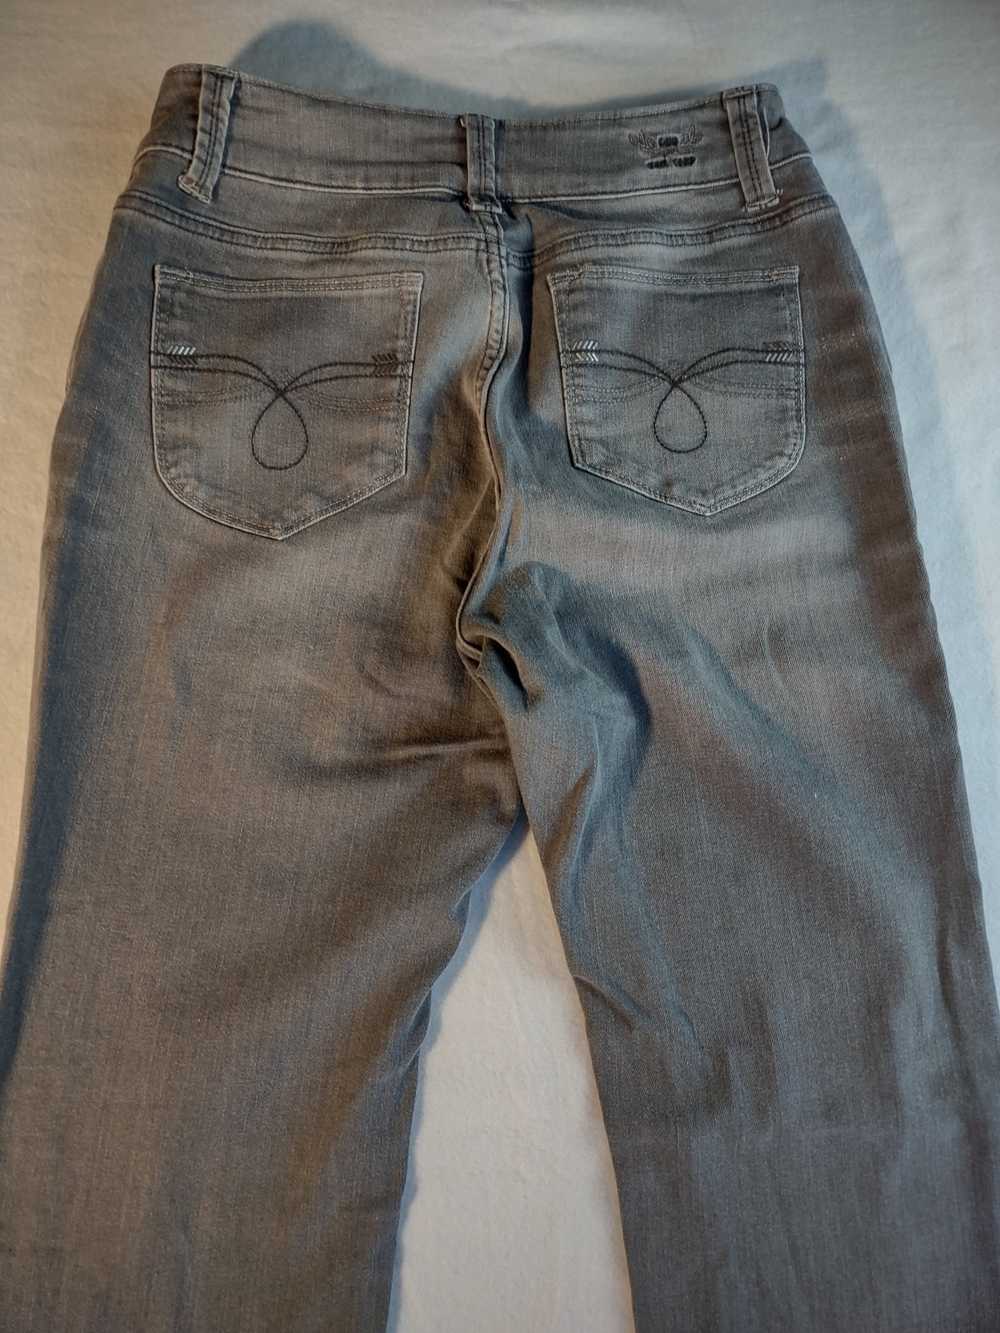 Lee Lee Perfect Fit Just Below Waist denim jeans … - image 7